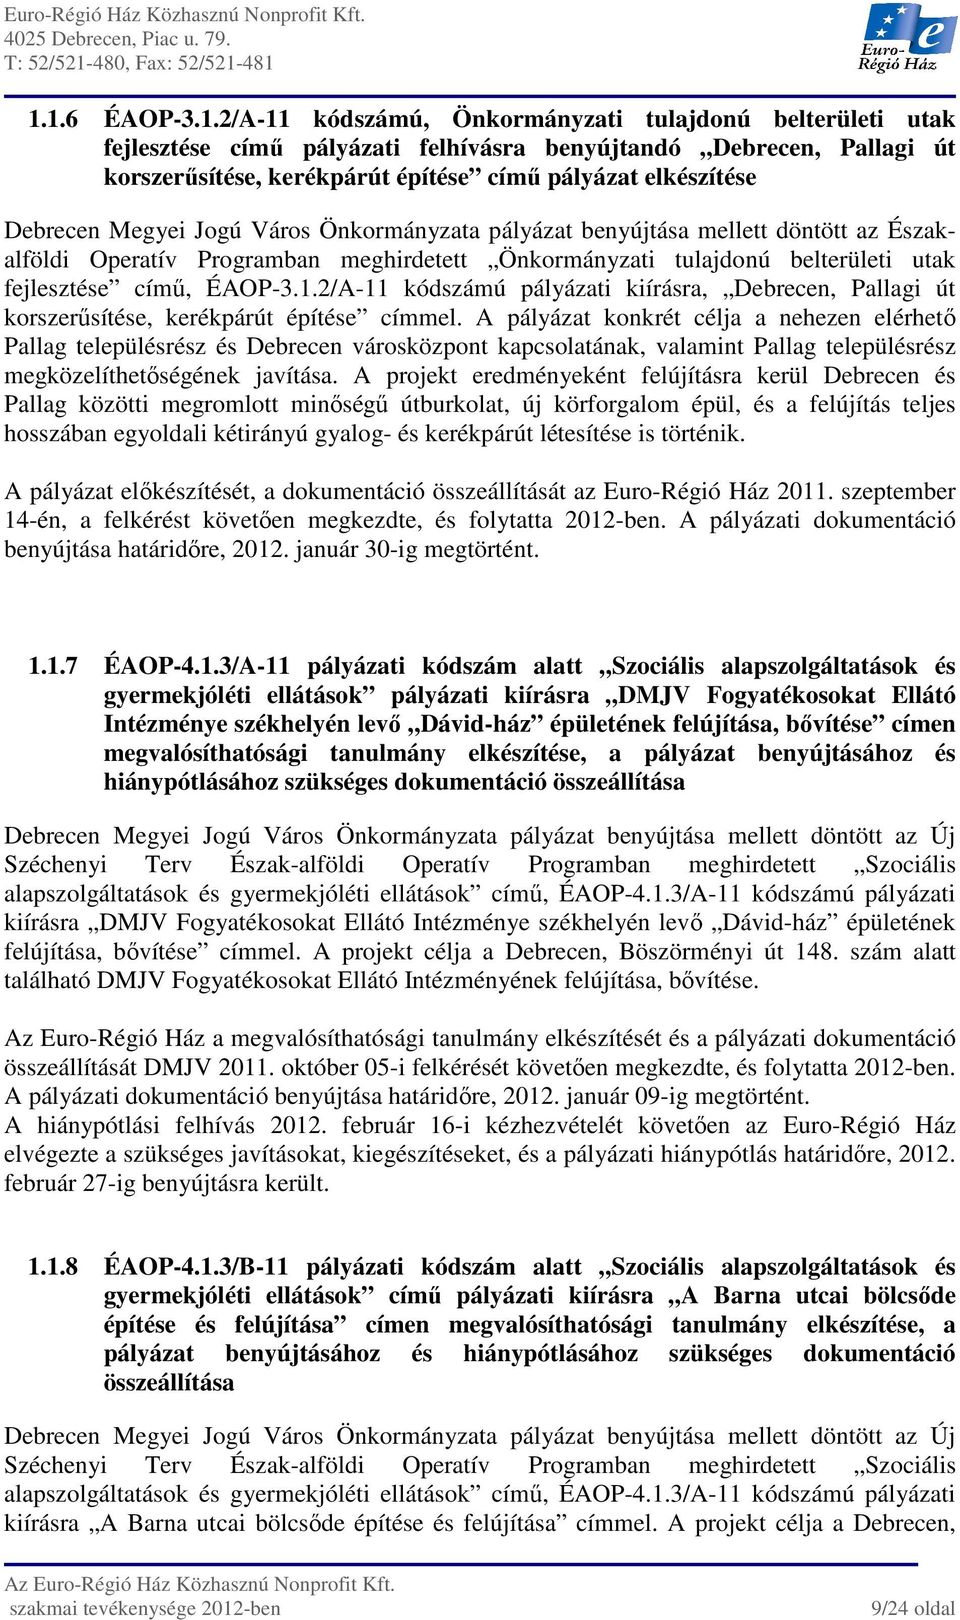 ÉAOP-3.1.2/A-11 kódszámú pályázati kiírásra, Debrecen, Pallagi út korszerűsítése, kerékpárút építése címmel.